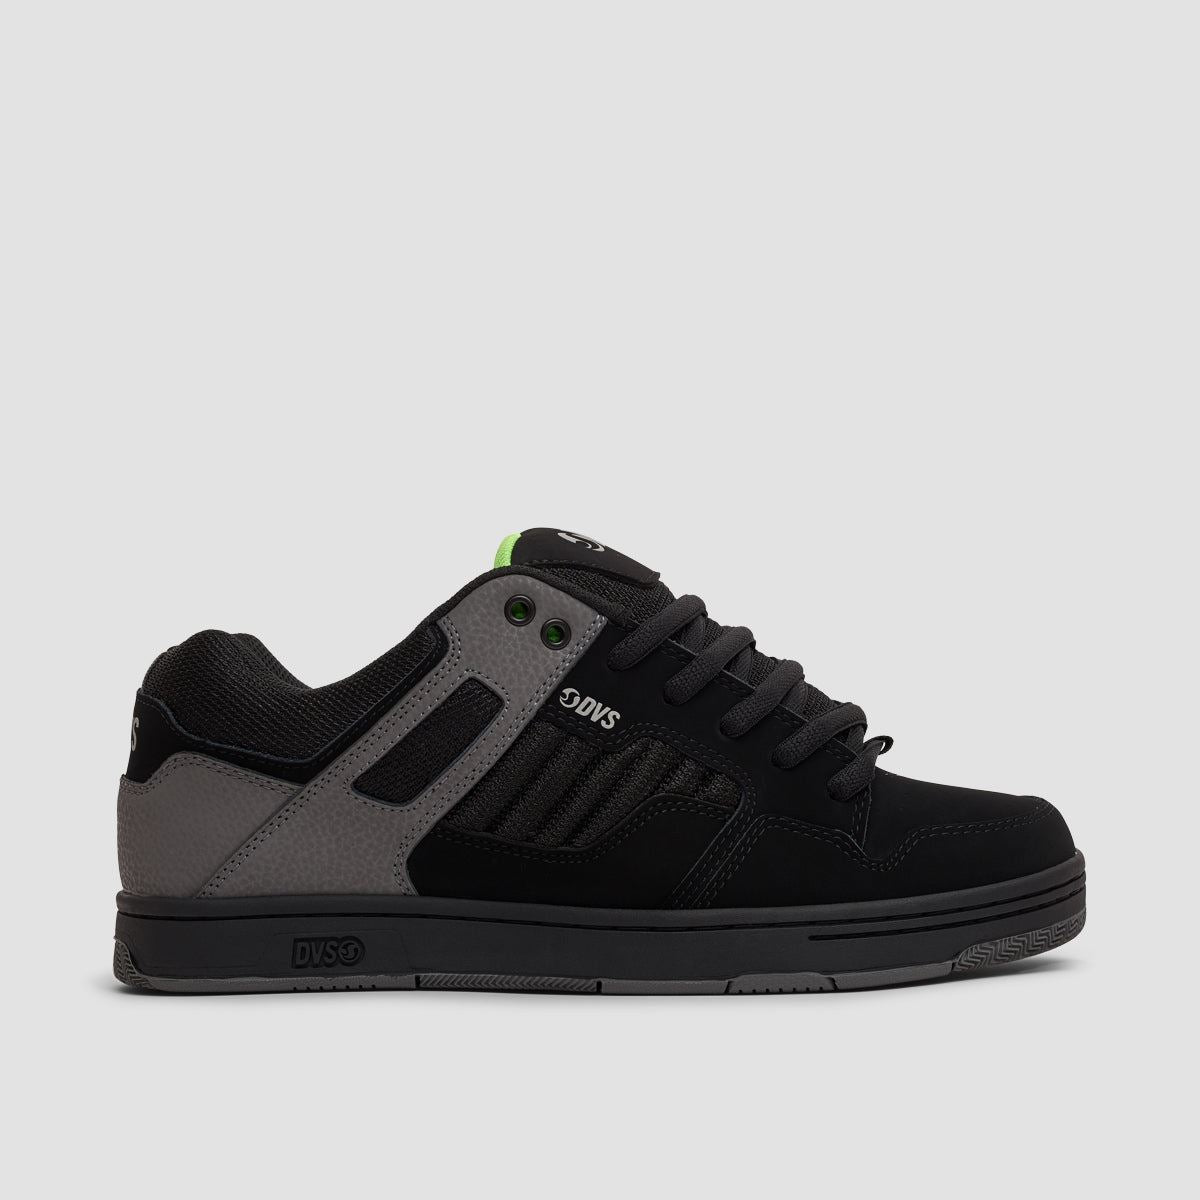 DVS Enduro 125 Shoes - Black/Charcoal/Lime Nubuck